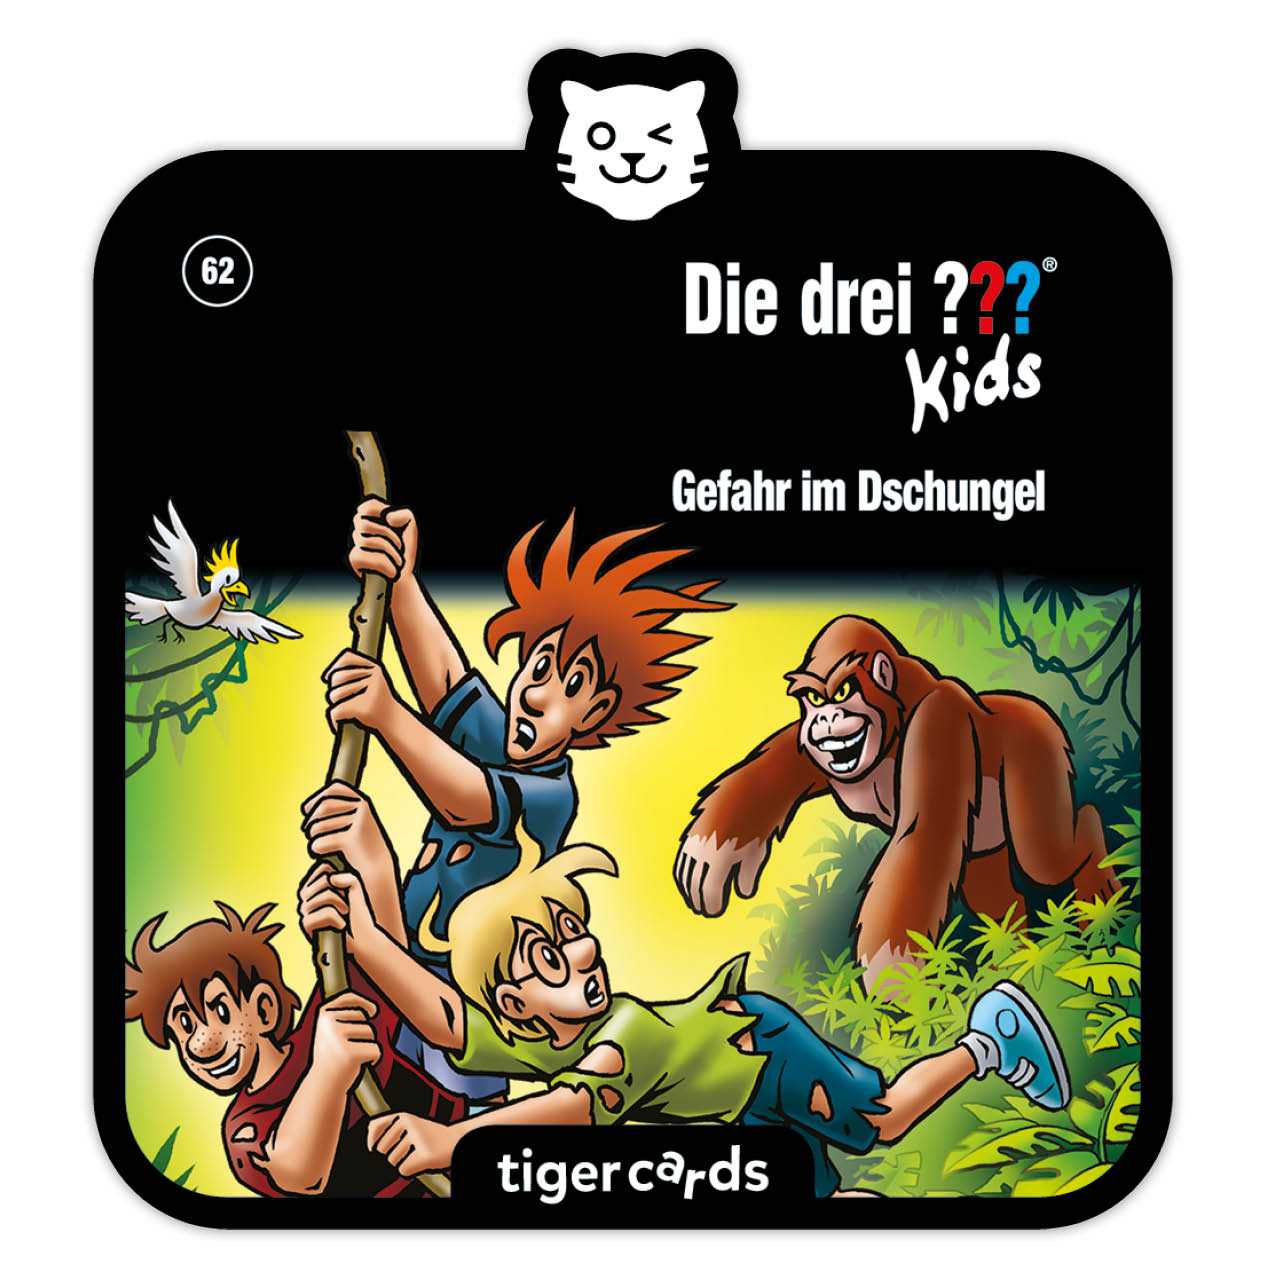 Die drei ??? Kids - Gefahr im Dschungel als Tigercard